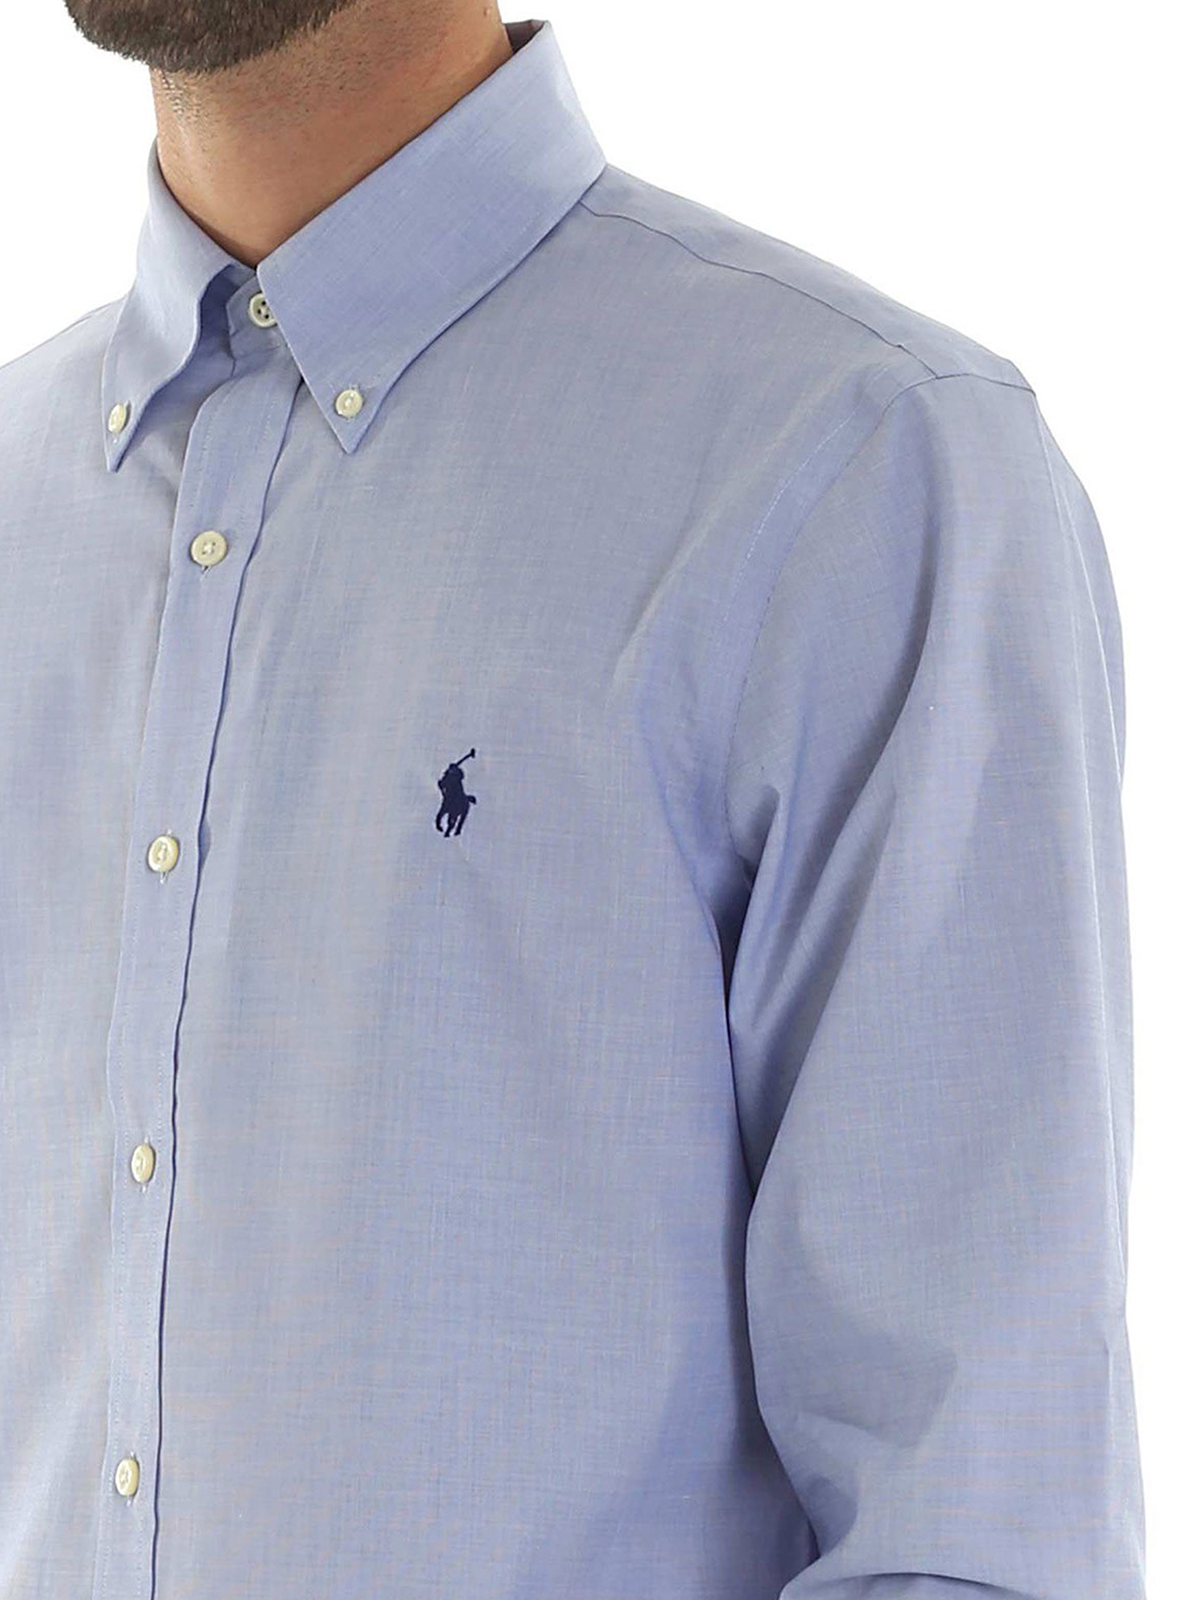 Shirts Polo Ralph Lauren - Light blue button down shirt - 712722192001